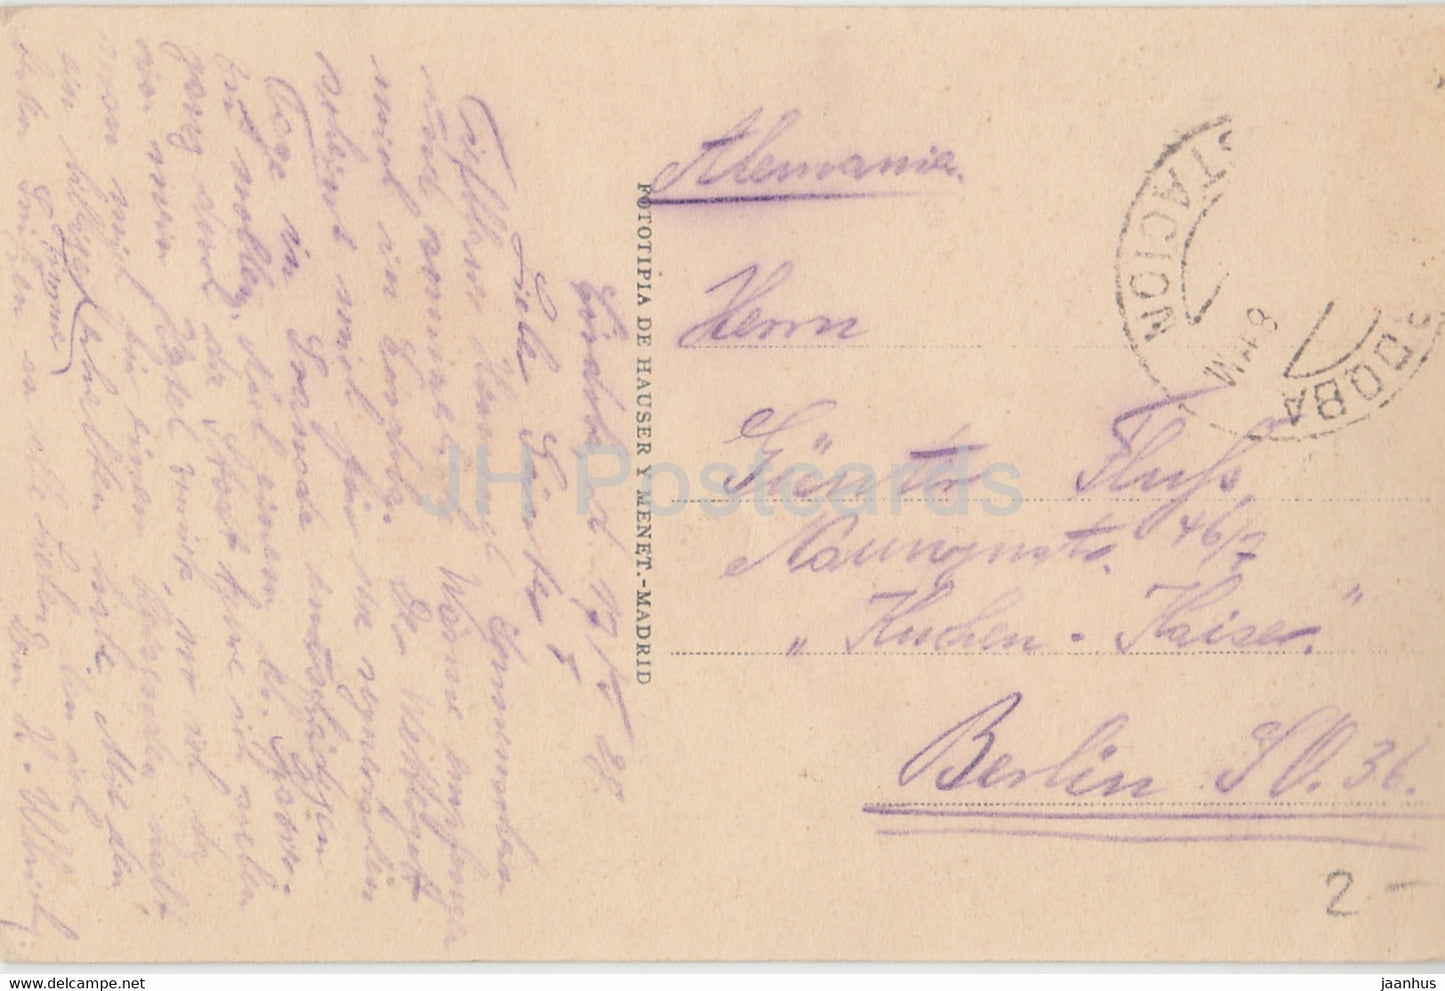 Cordoba - Torre de Carraola y Puente Romano - alte Postkarte - 1928 - Spanien - gebraucht